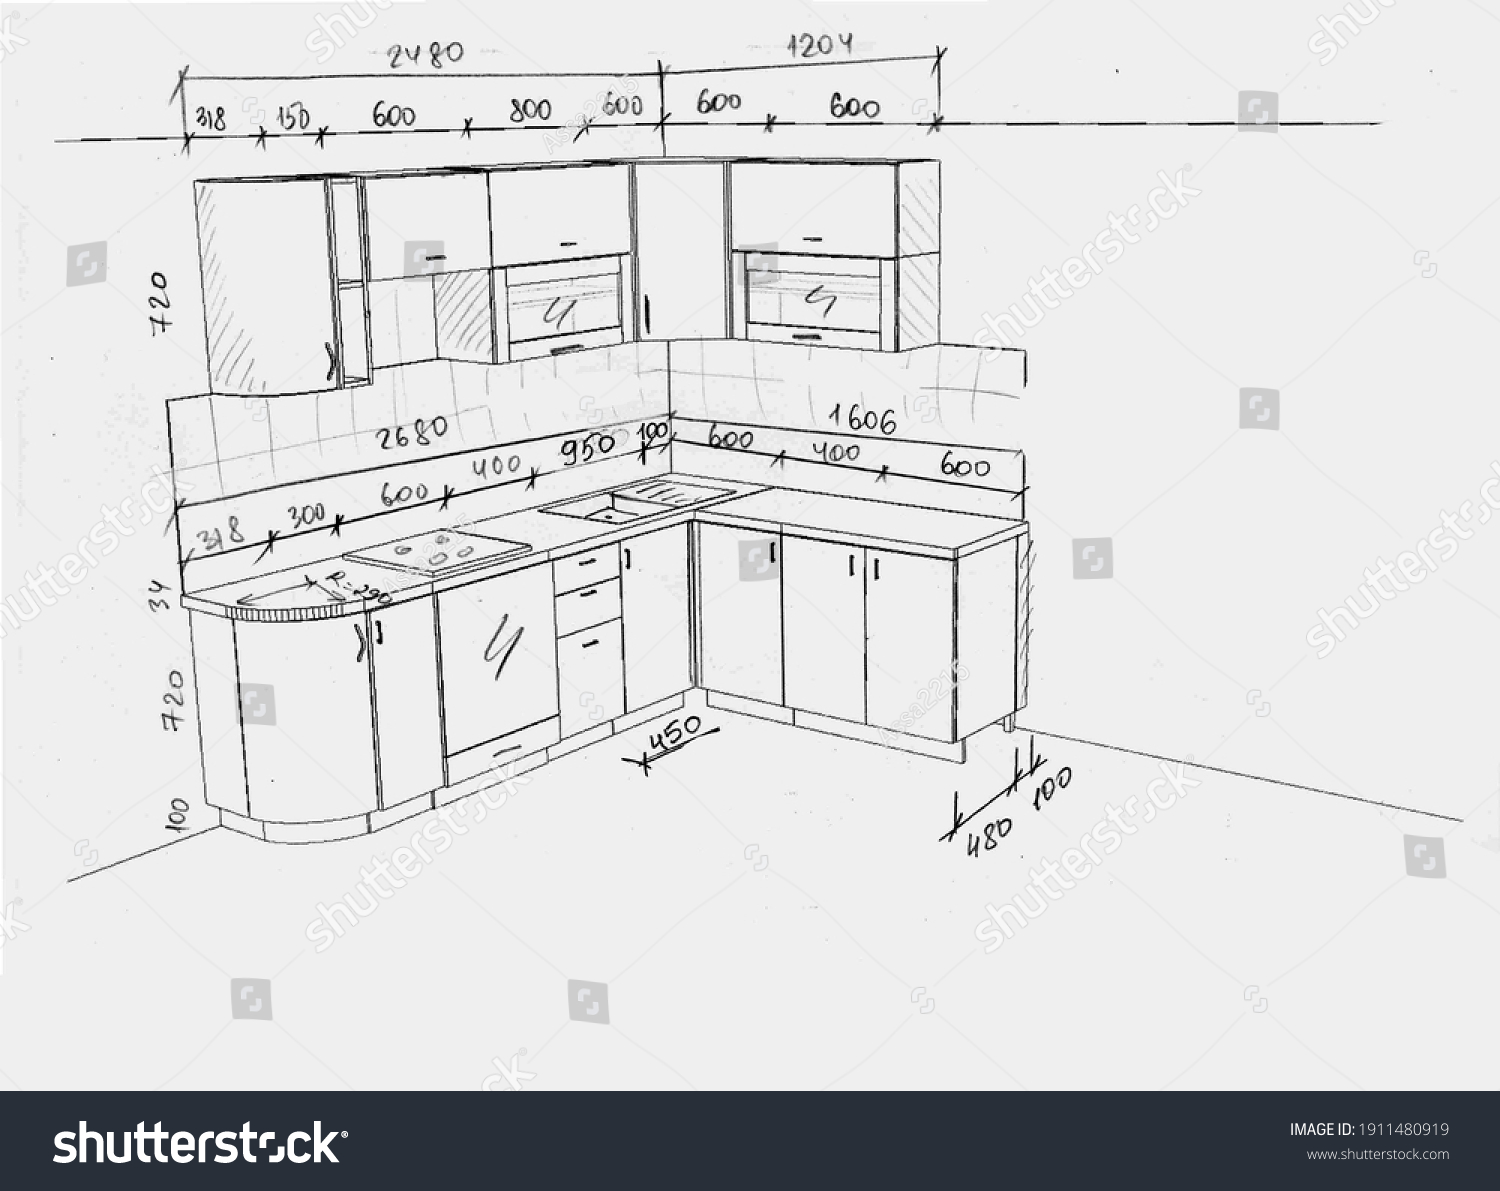 кухонный гарнитур высота от пола до столешницы на кухне